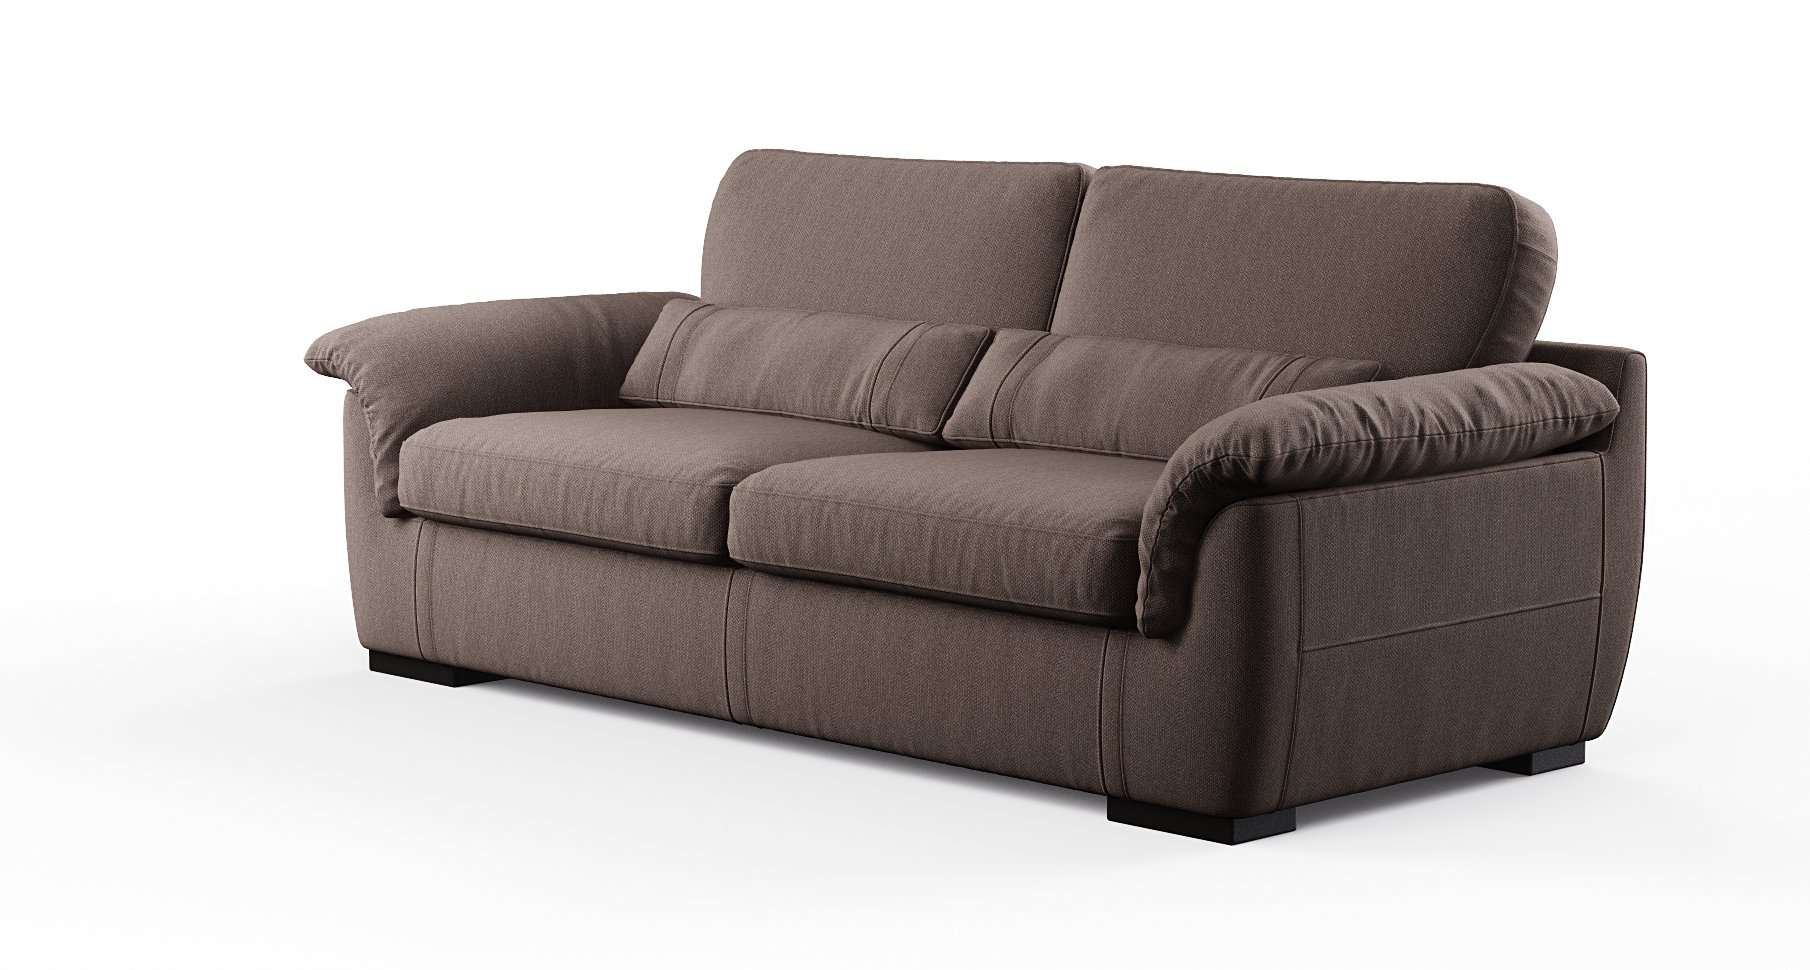 Nubi sofa